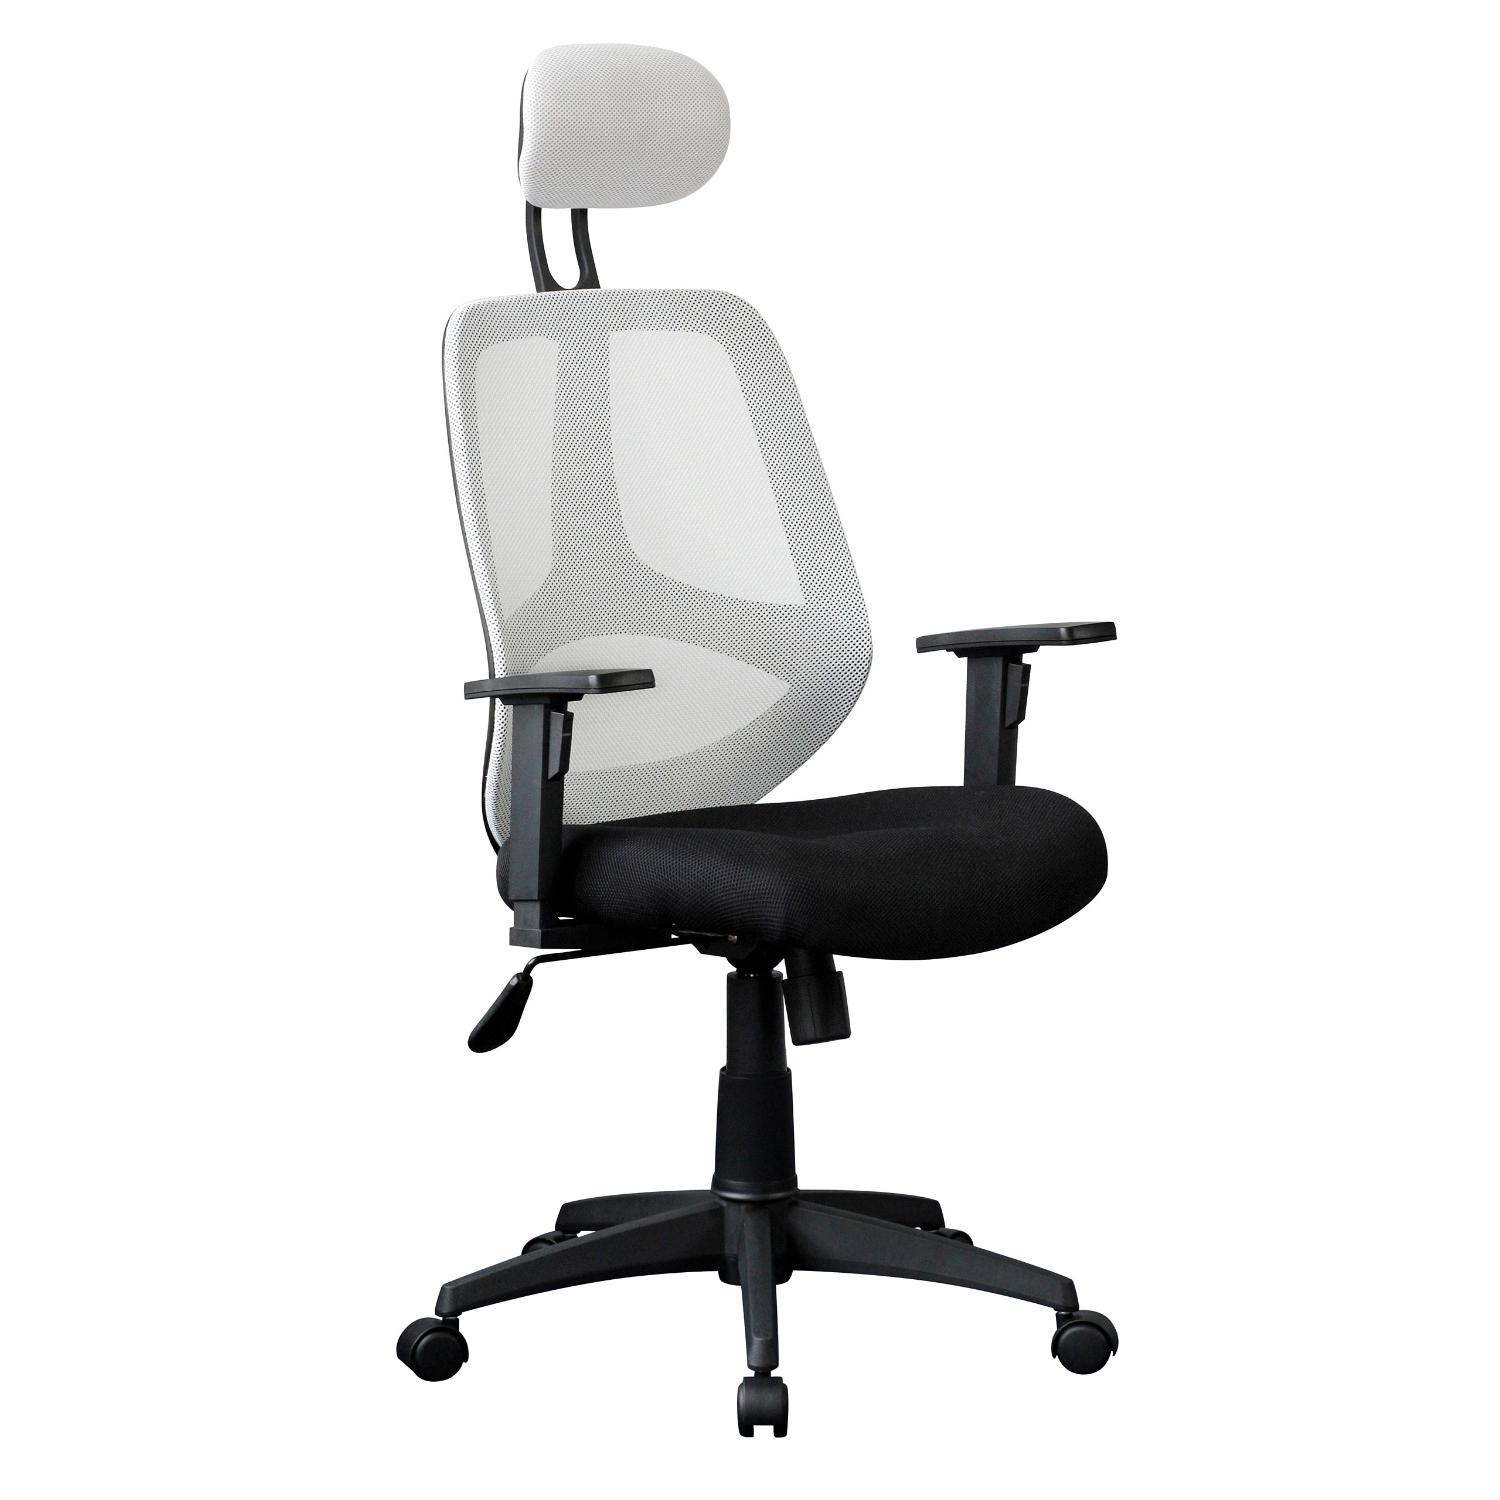 Cadeira Ergonómica DRAKE, Com Apoia Cabeças e braços Reguláveis, em Malha respirável, Em Branco / Preto